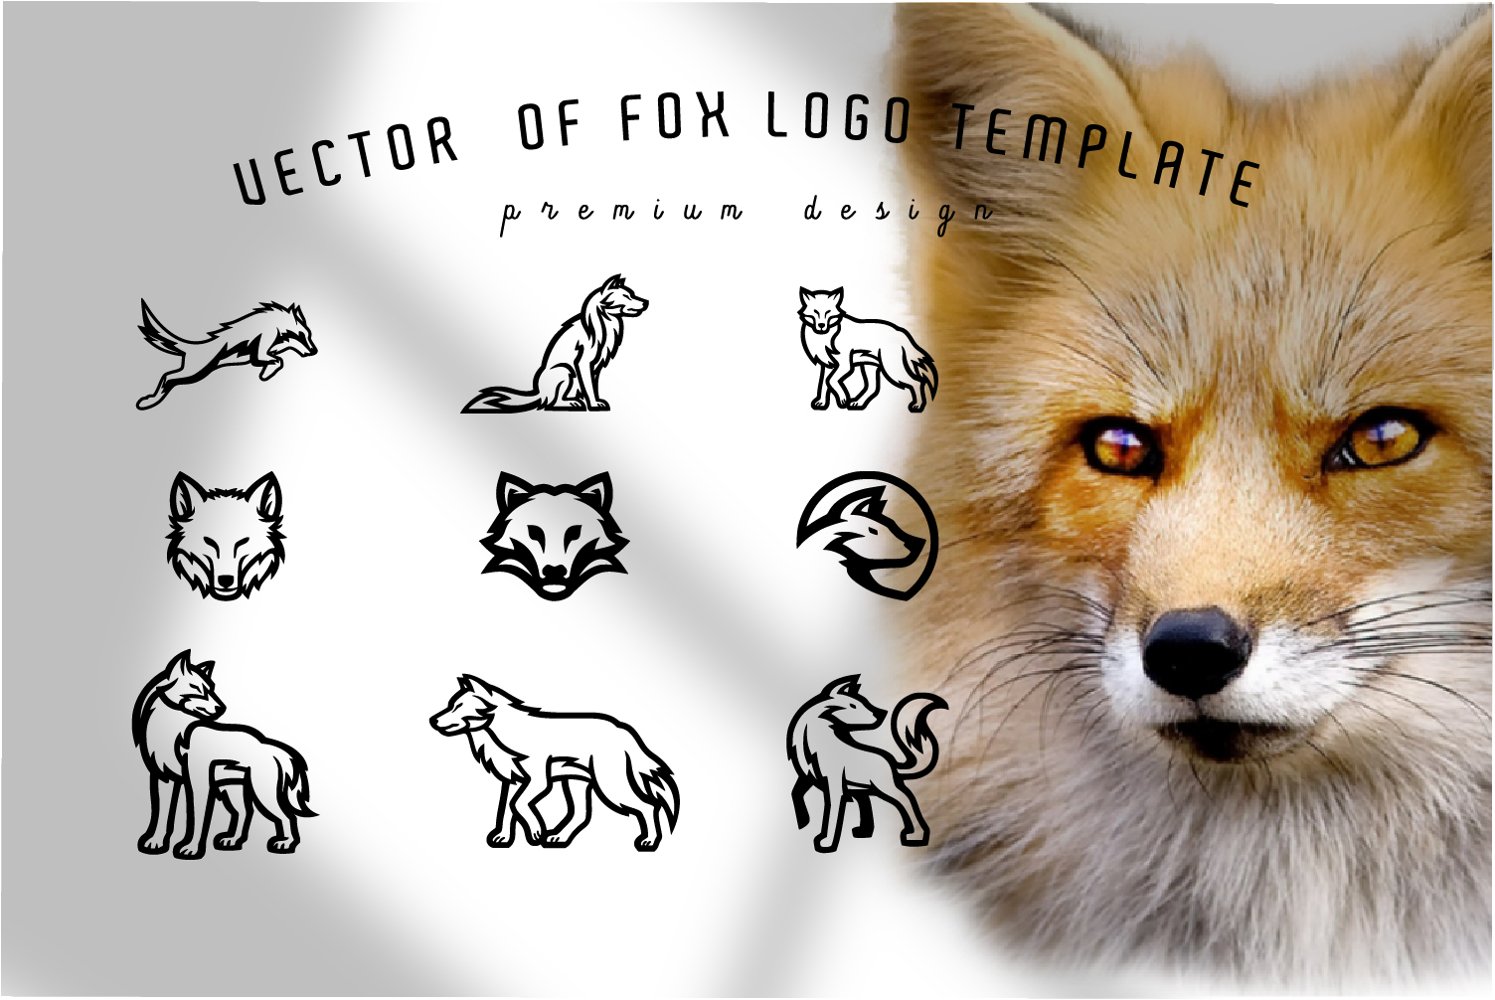 Vector of fox logo template - premium design.